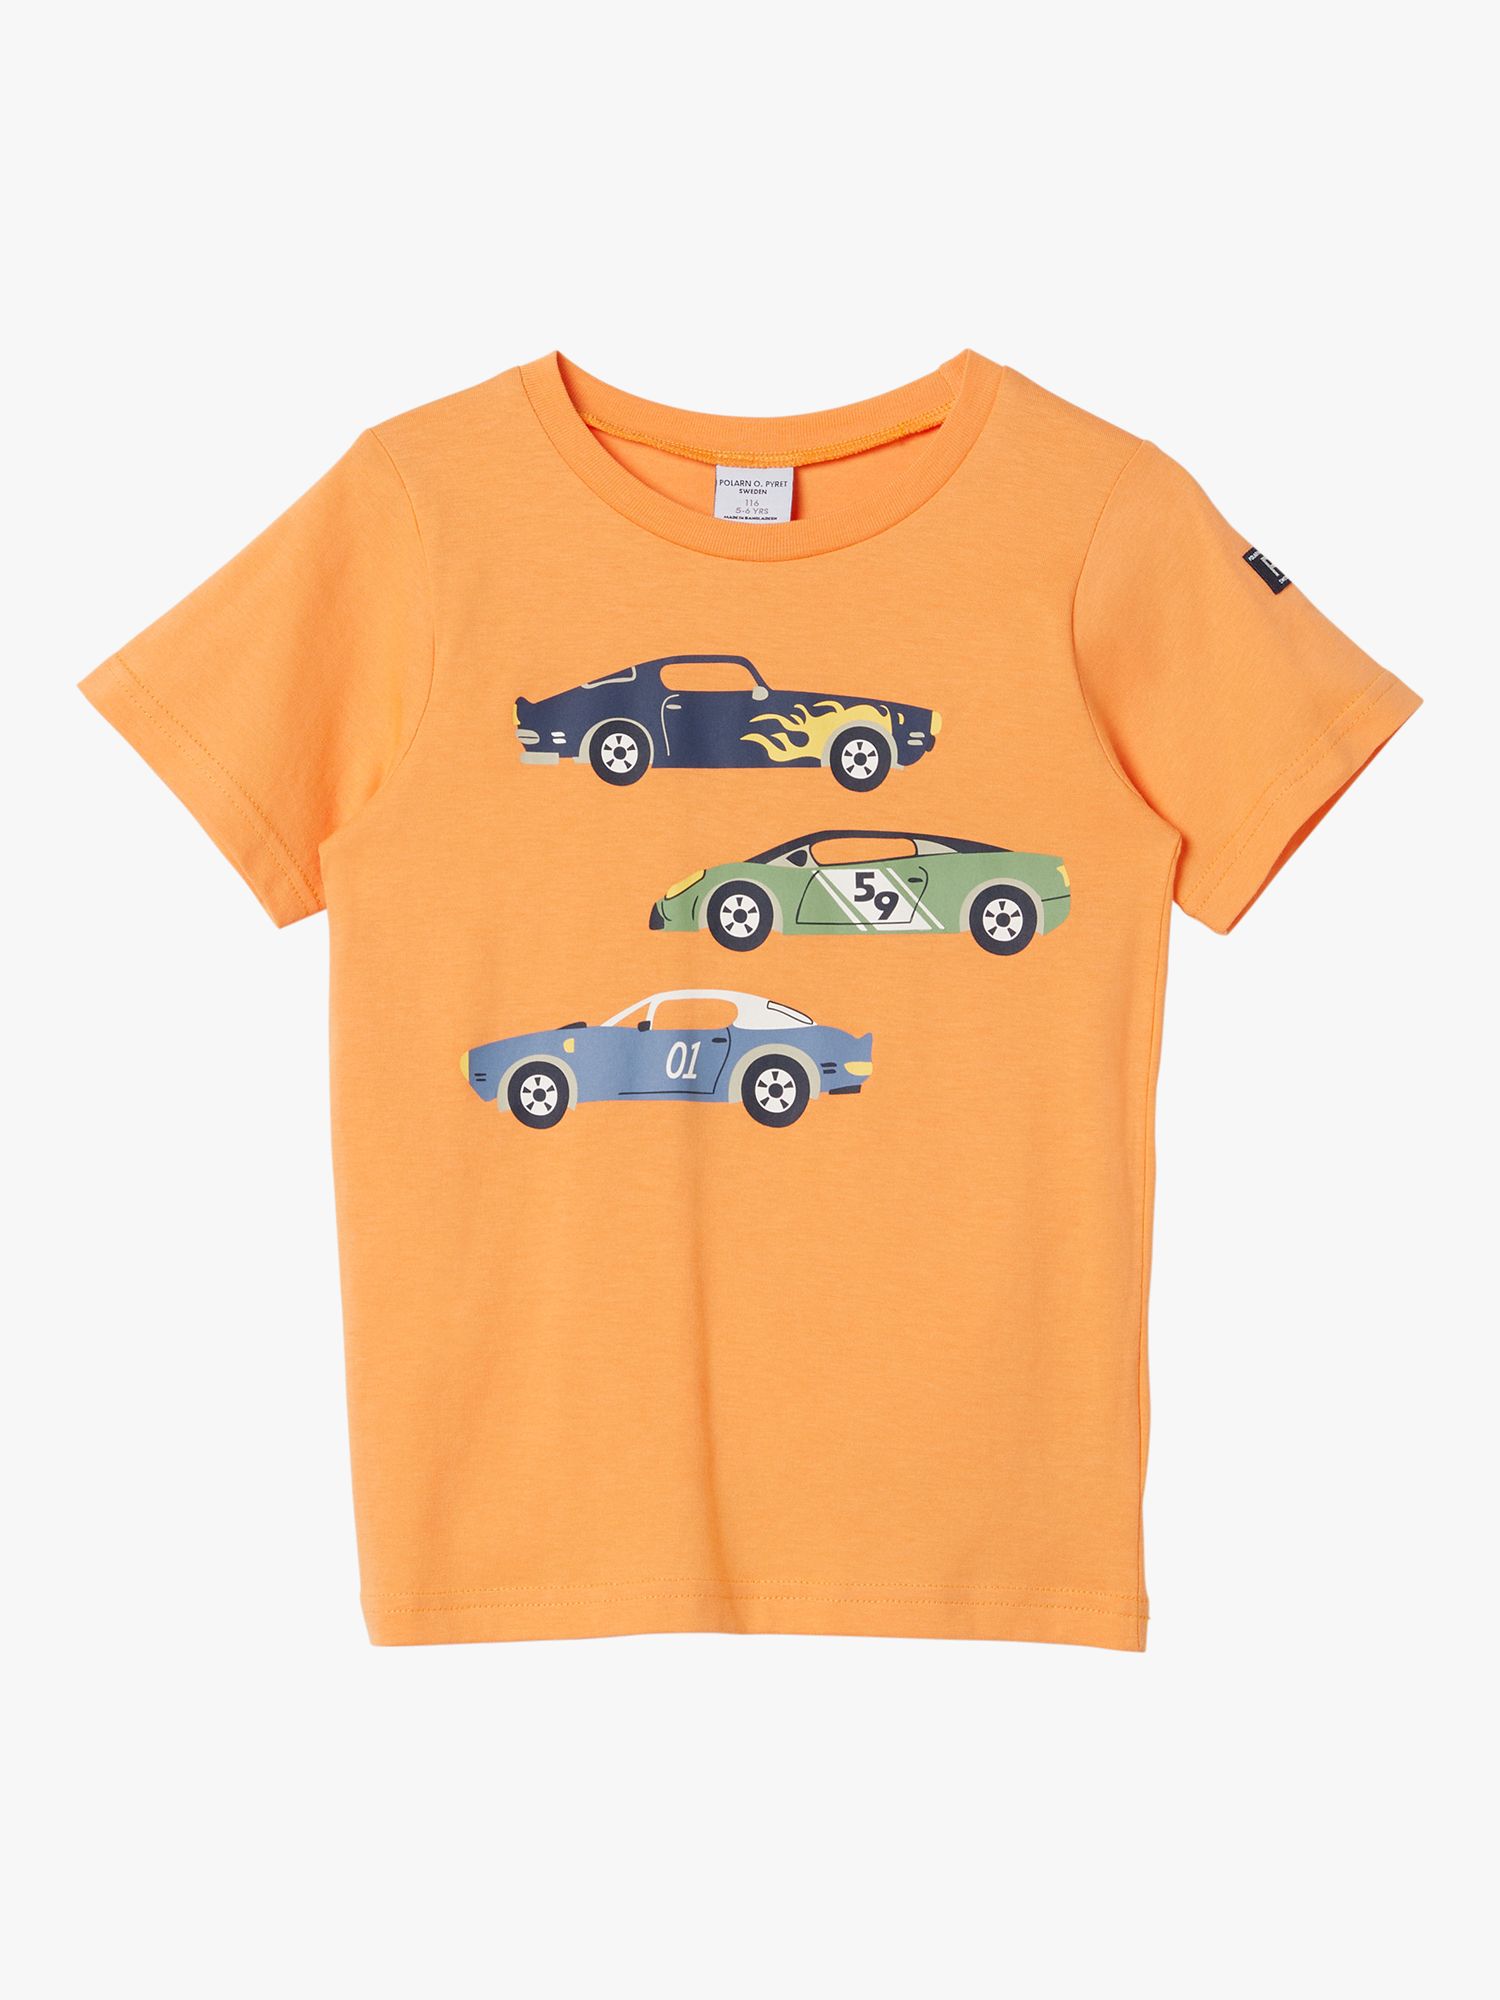 Polarn O. Pyret Kids' Organic Cotton Cars T-Shirt, Orange, 7-8 years